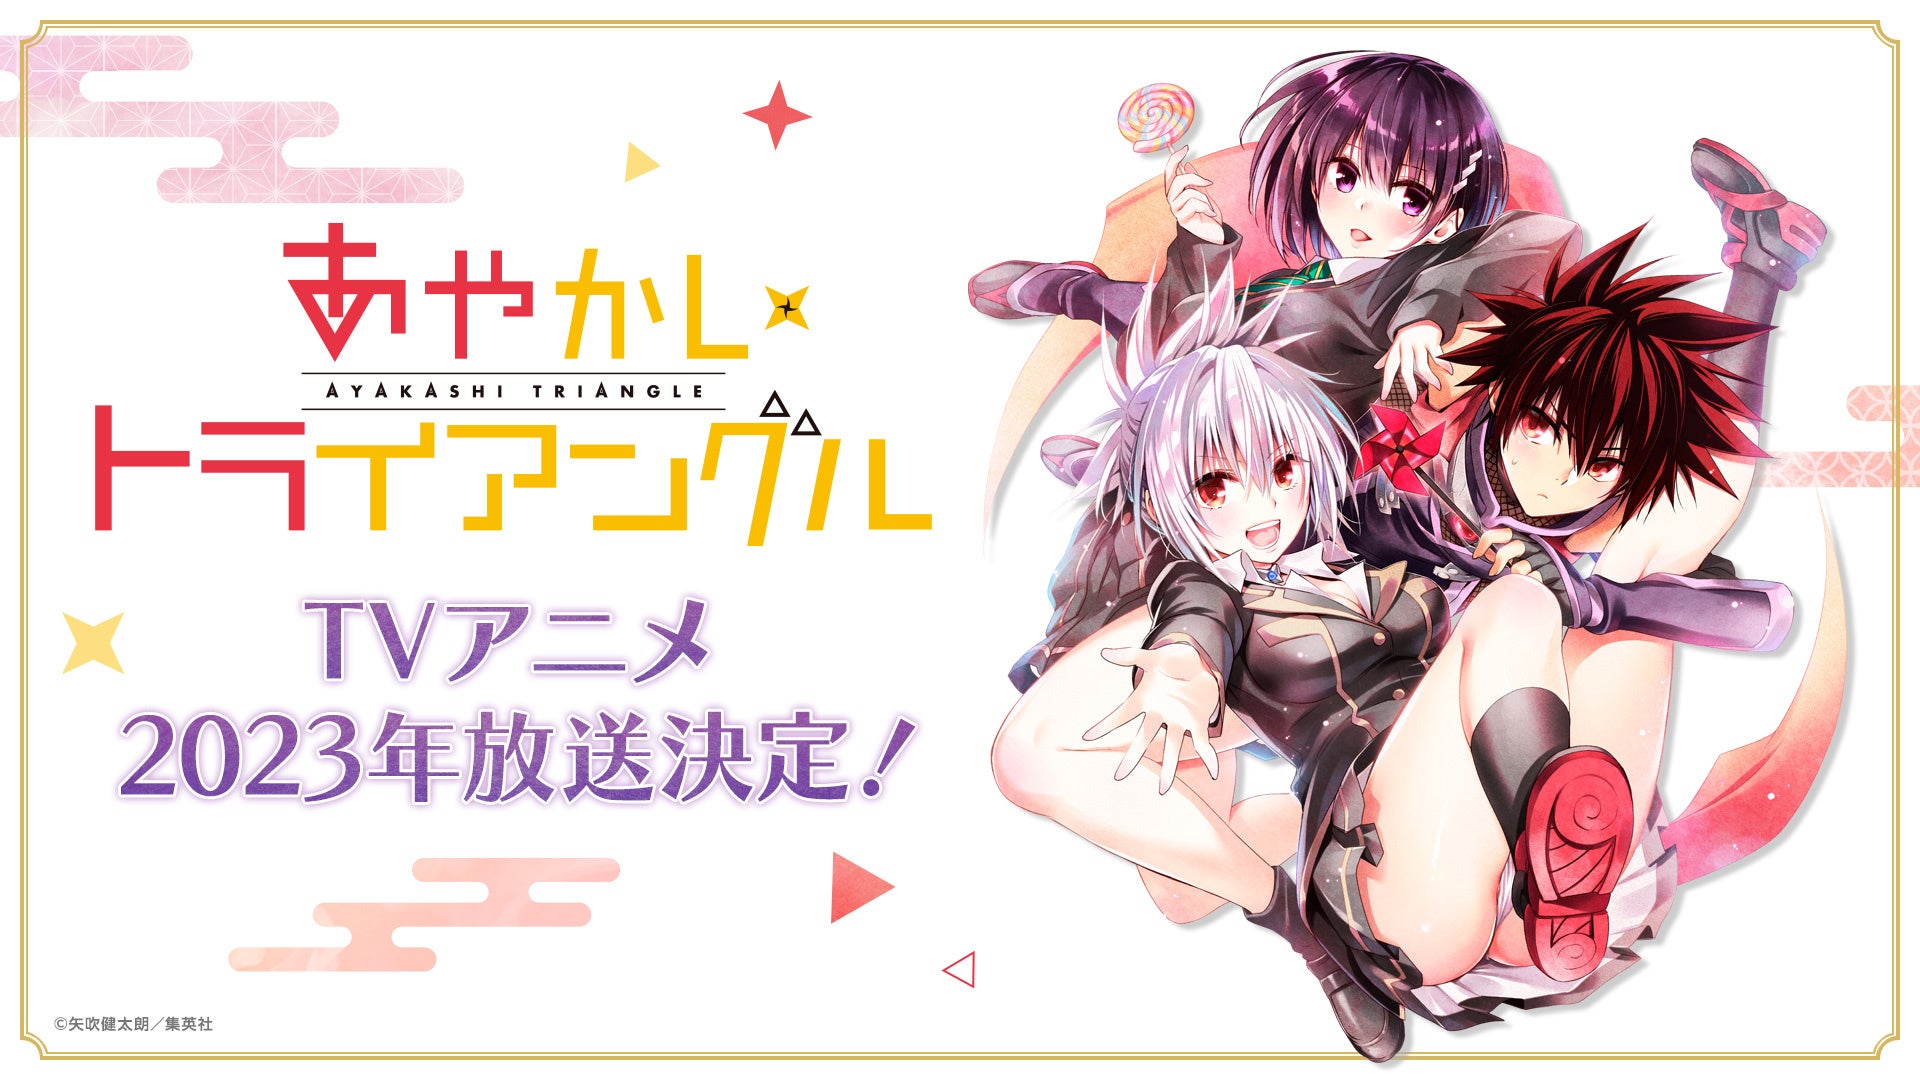 五彩緋夏プロデュース・メイクブランド「Armuje」が、「ロフト ベストコスメ 2022SS」ネクストコスメNO.3に選出